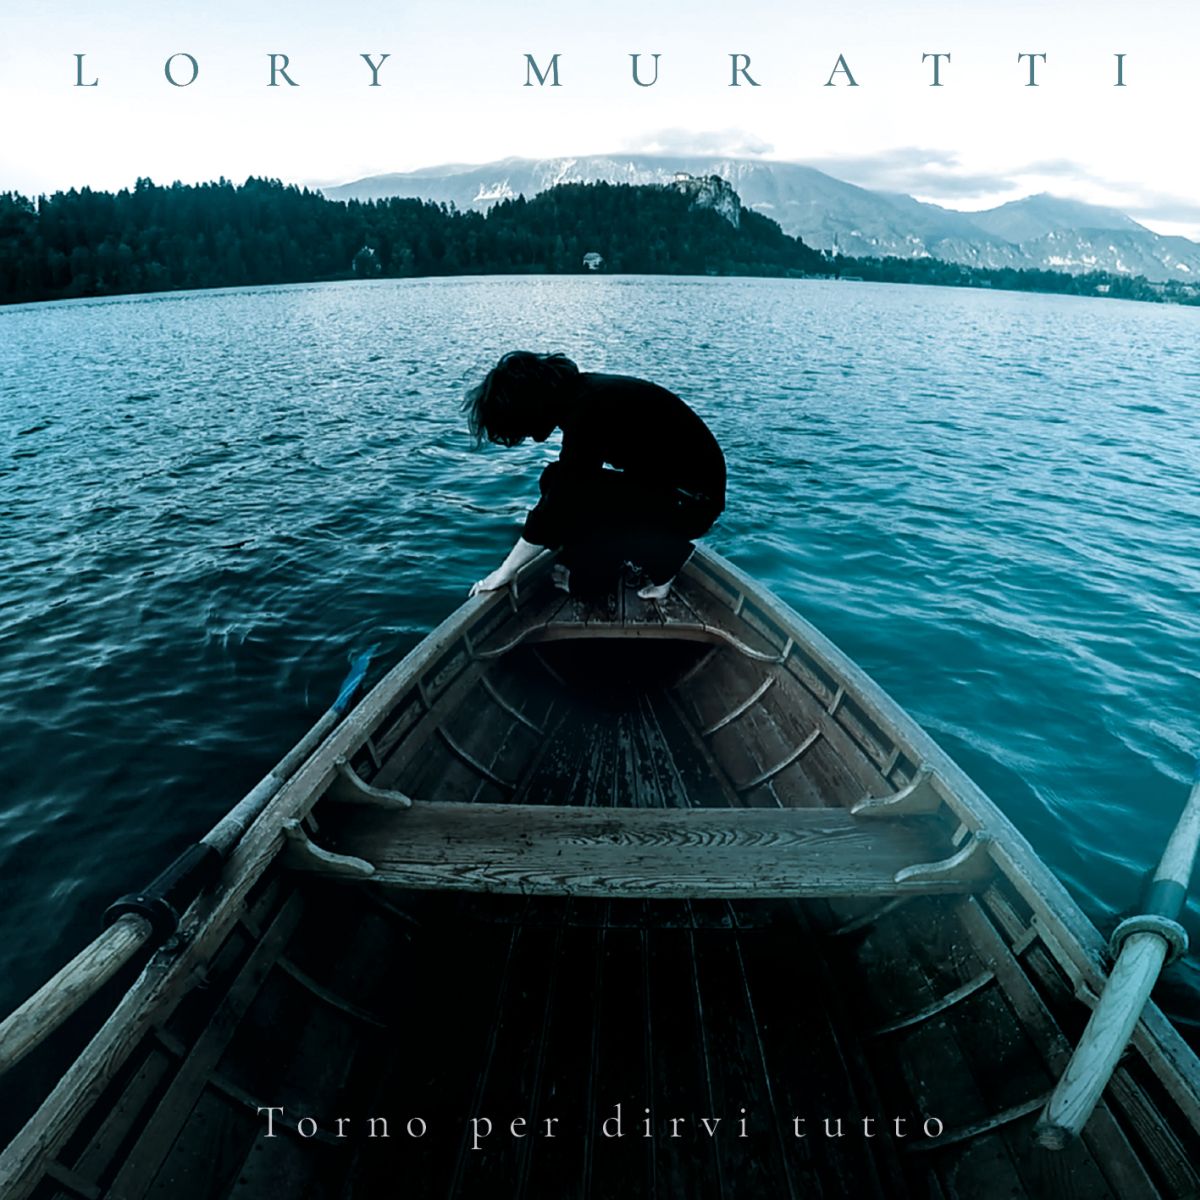 Torno per dirvi tutto progetto discografico ed editoriale per Lory Muratti